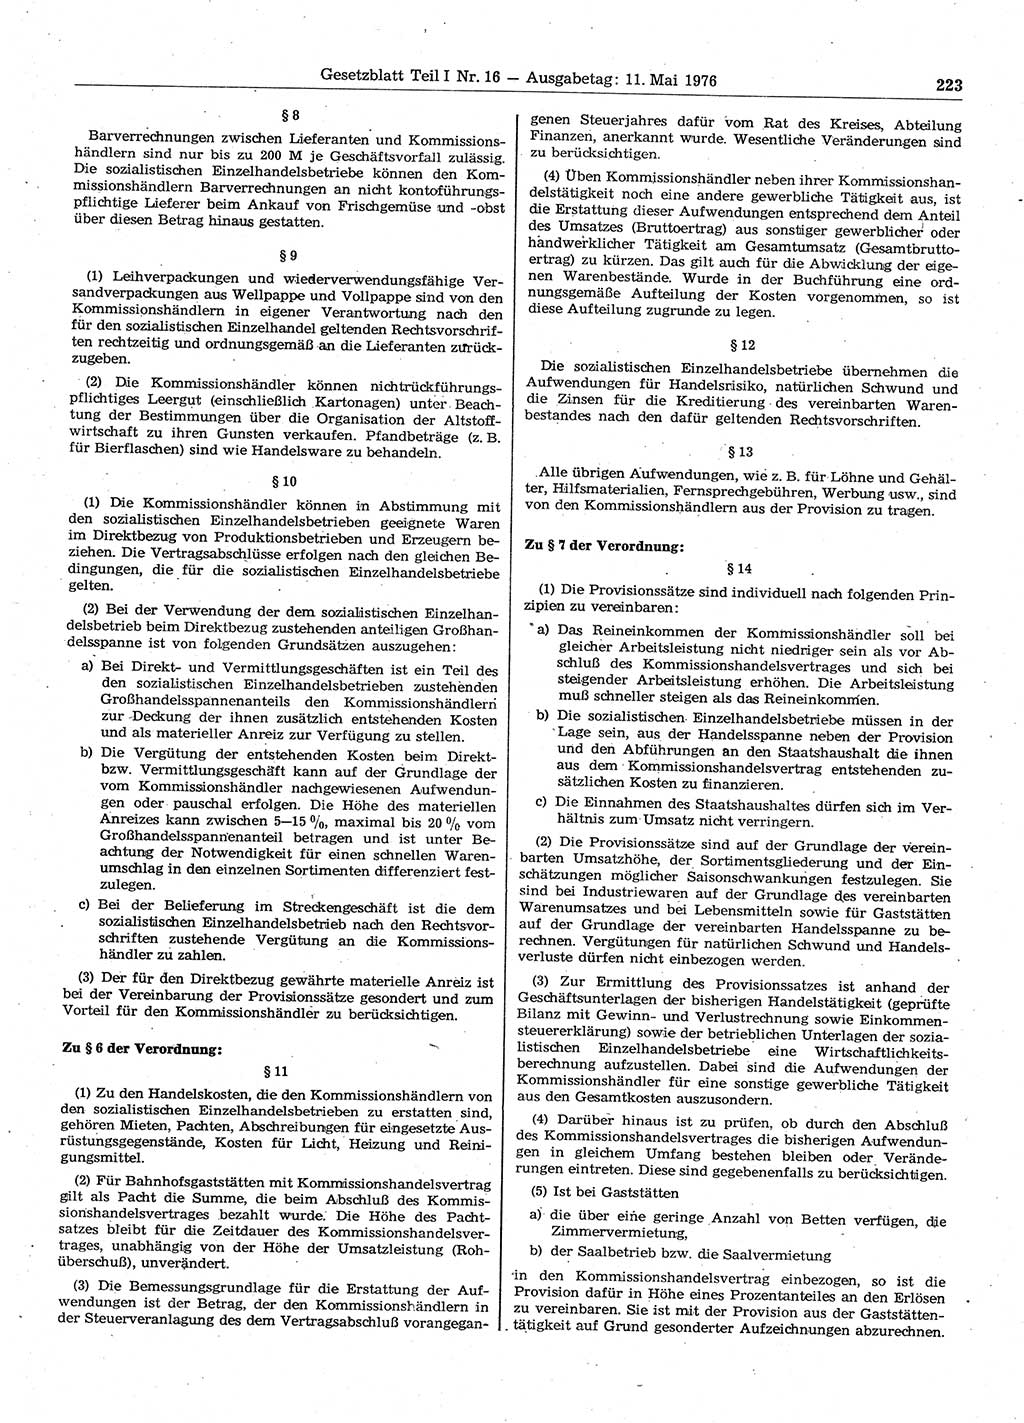 Gesetzblatt (GBl.) der Deutschen Demokratischen Republik (DDR) Teil Ⅰ 1976, Seite 223 (GBl. DDR Ⅰ 1976, S. 223)